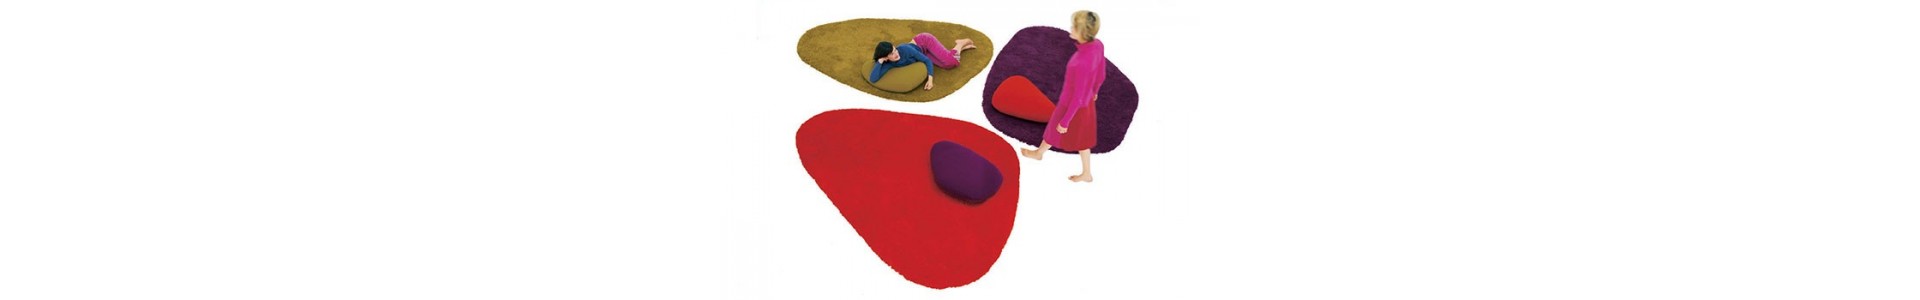 Complementos de alfombras. Catálogo de Muebles Lluesma